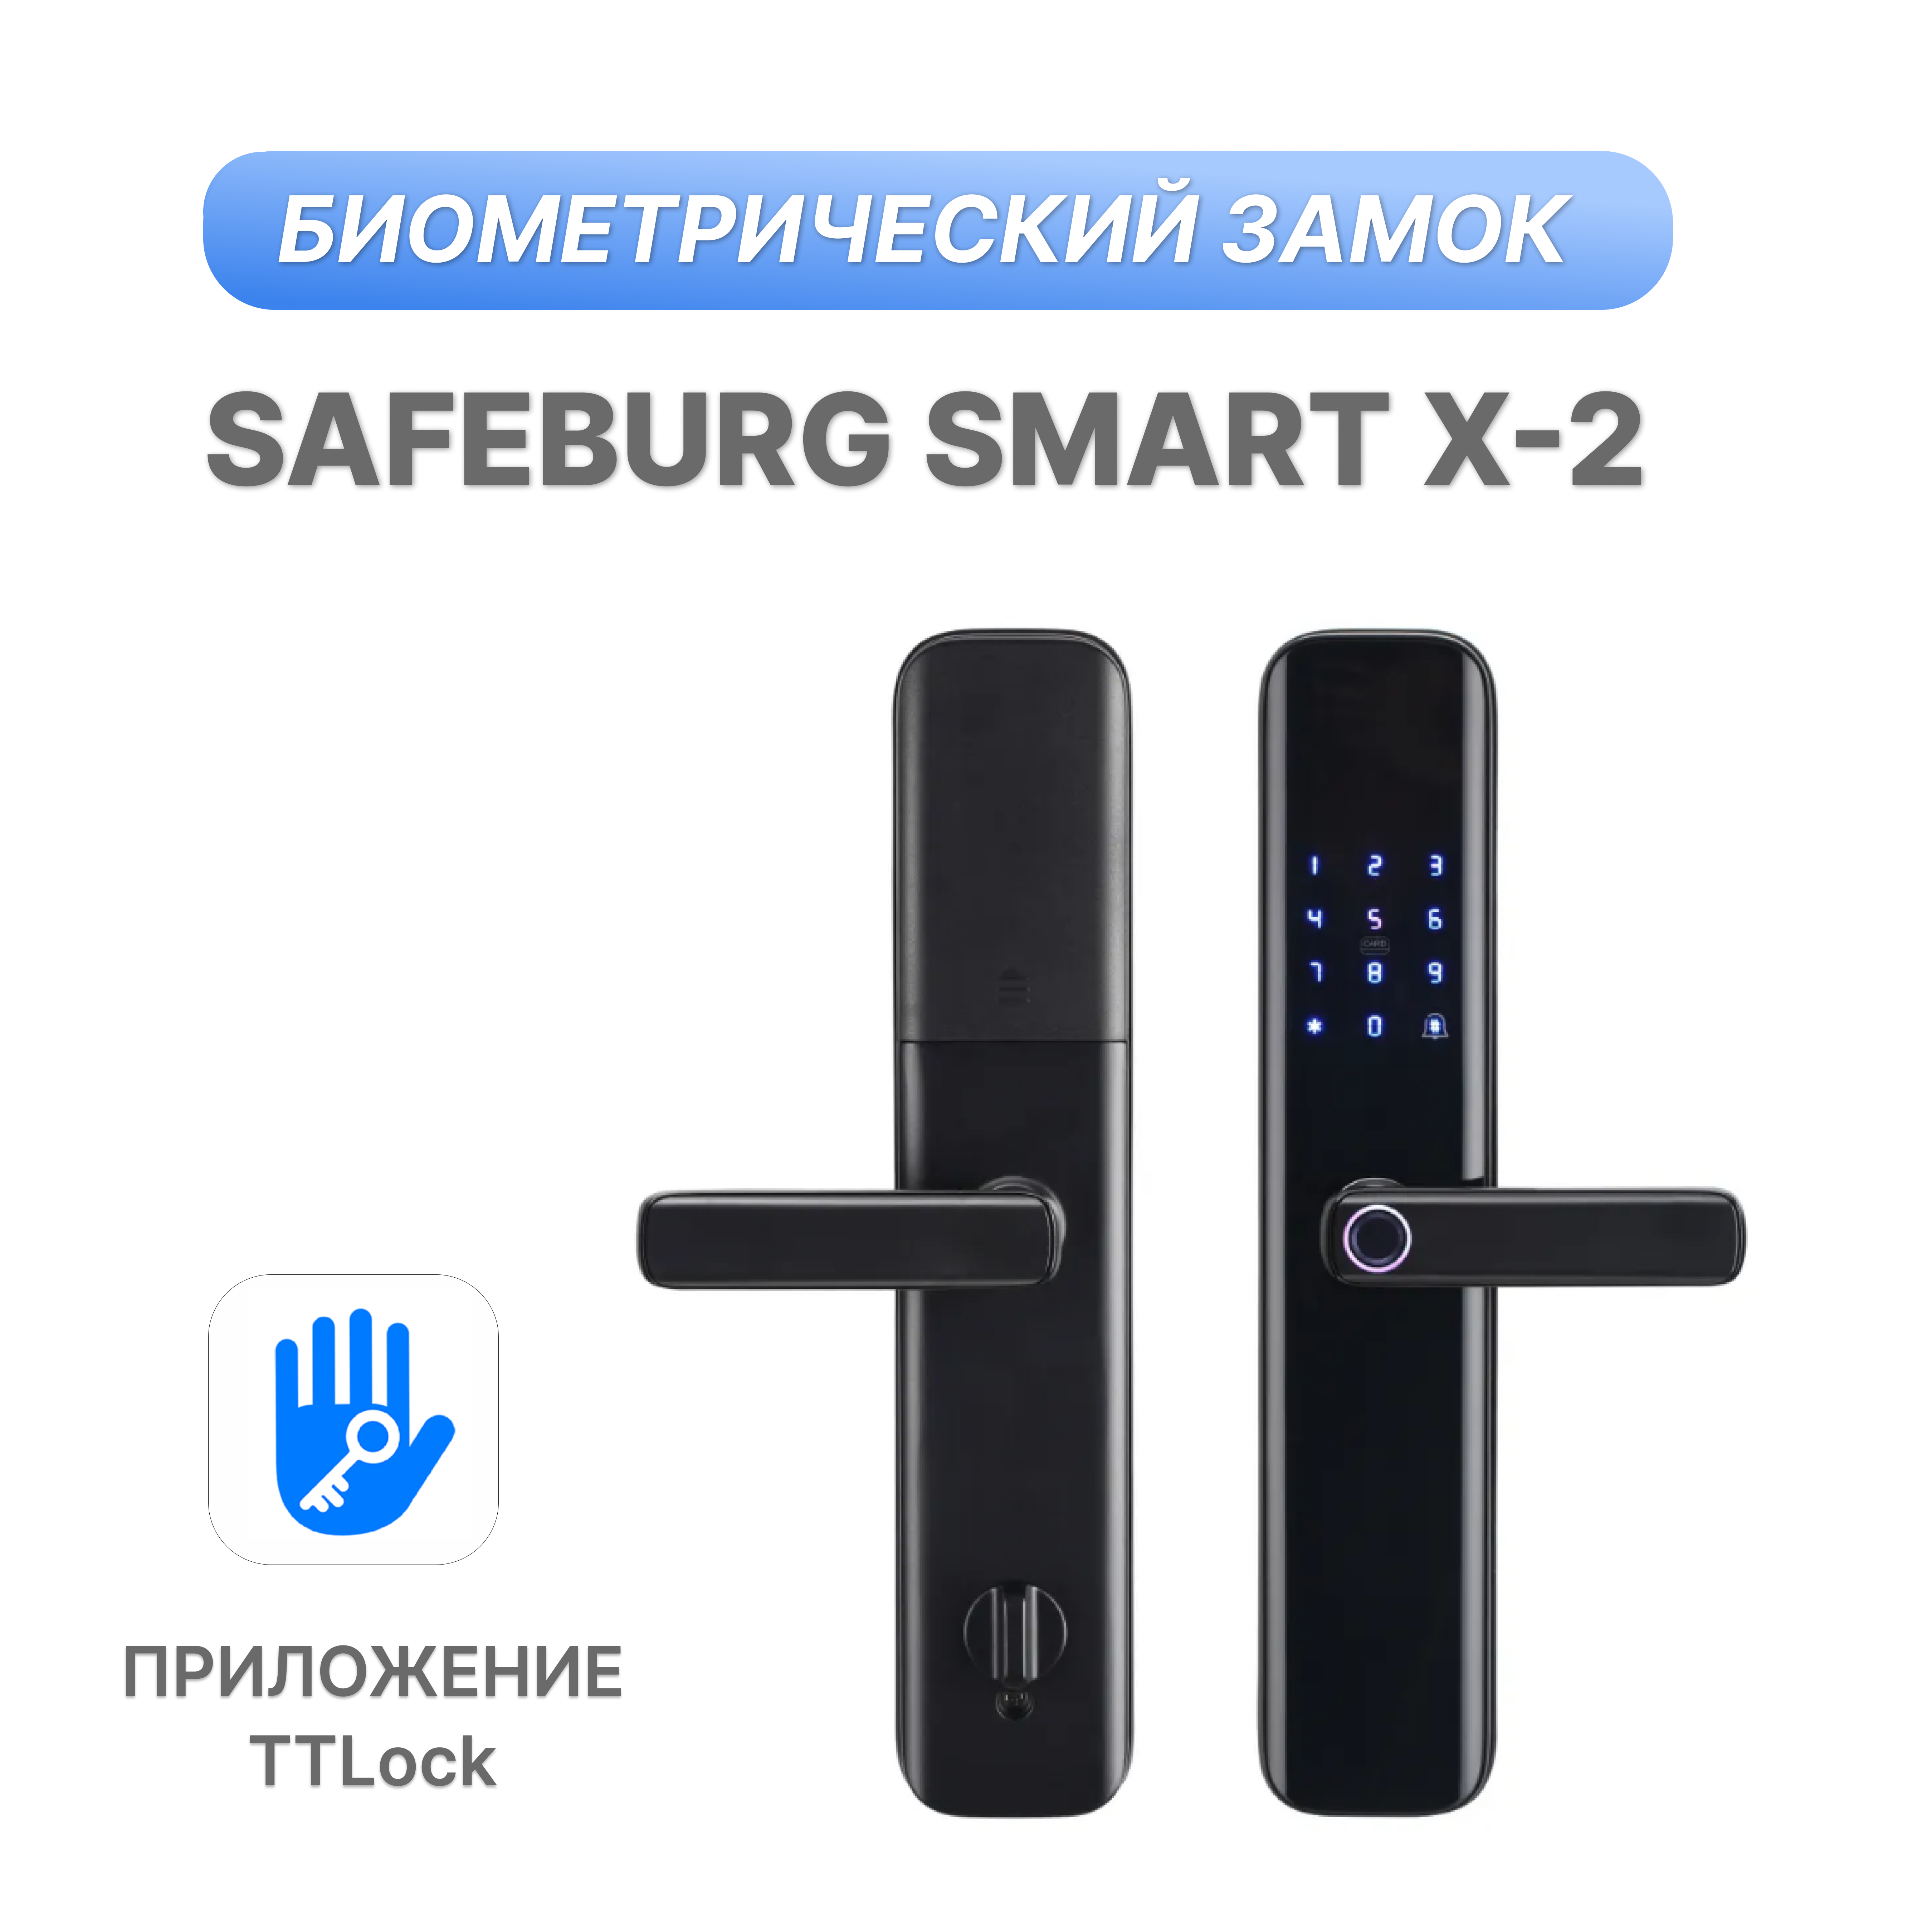 фото Электронный биометрический дверной замок safeburg smart x-2, с отпечатком пальца и картой